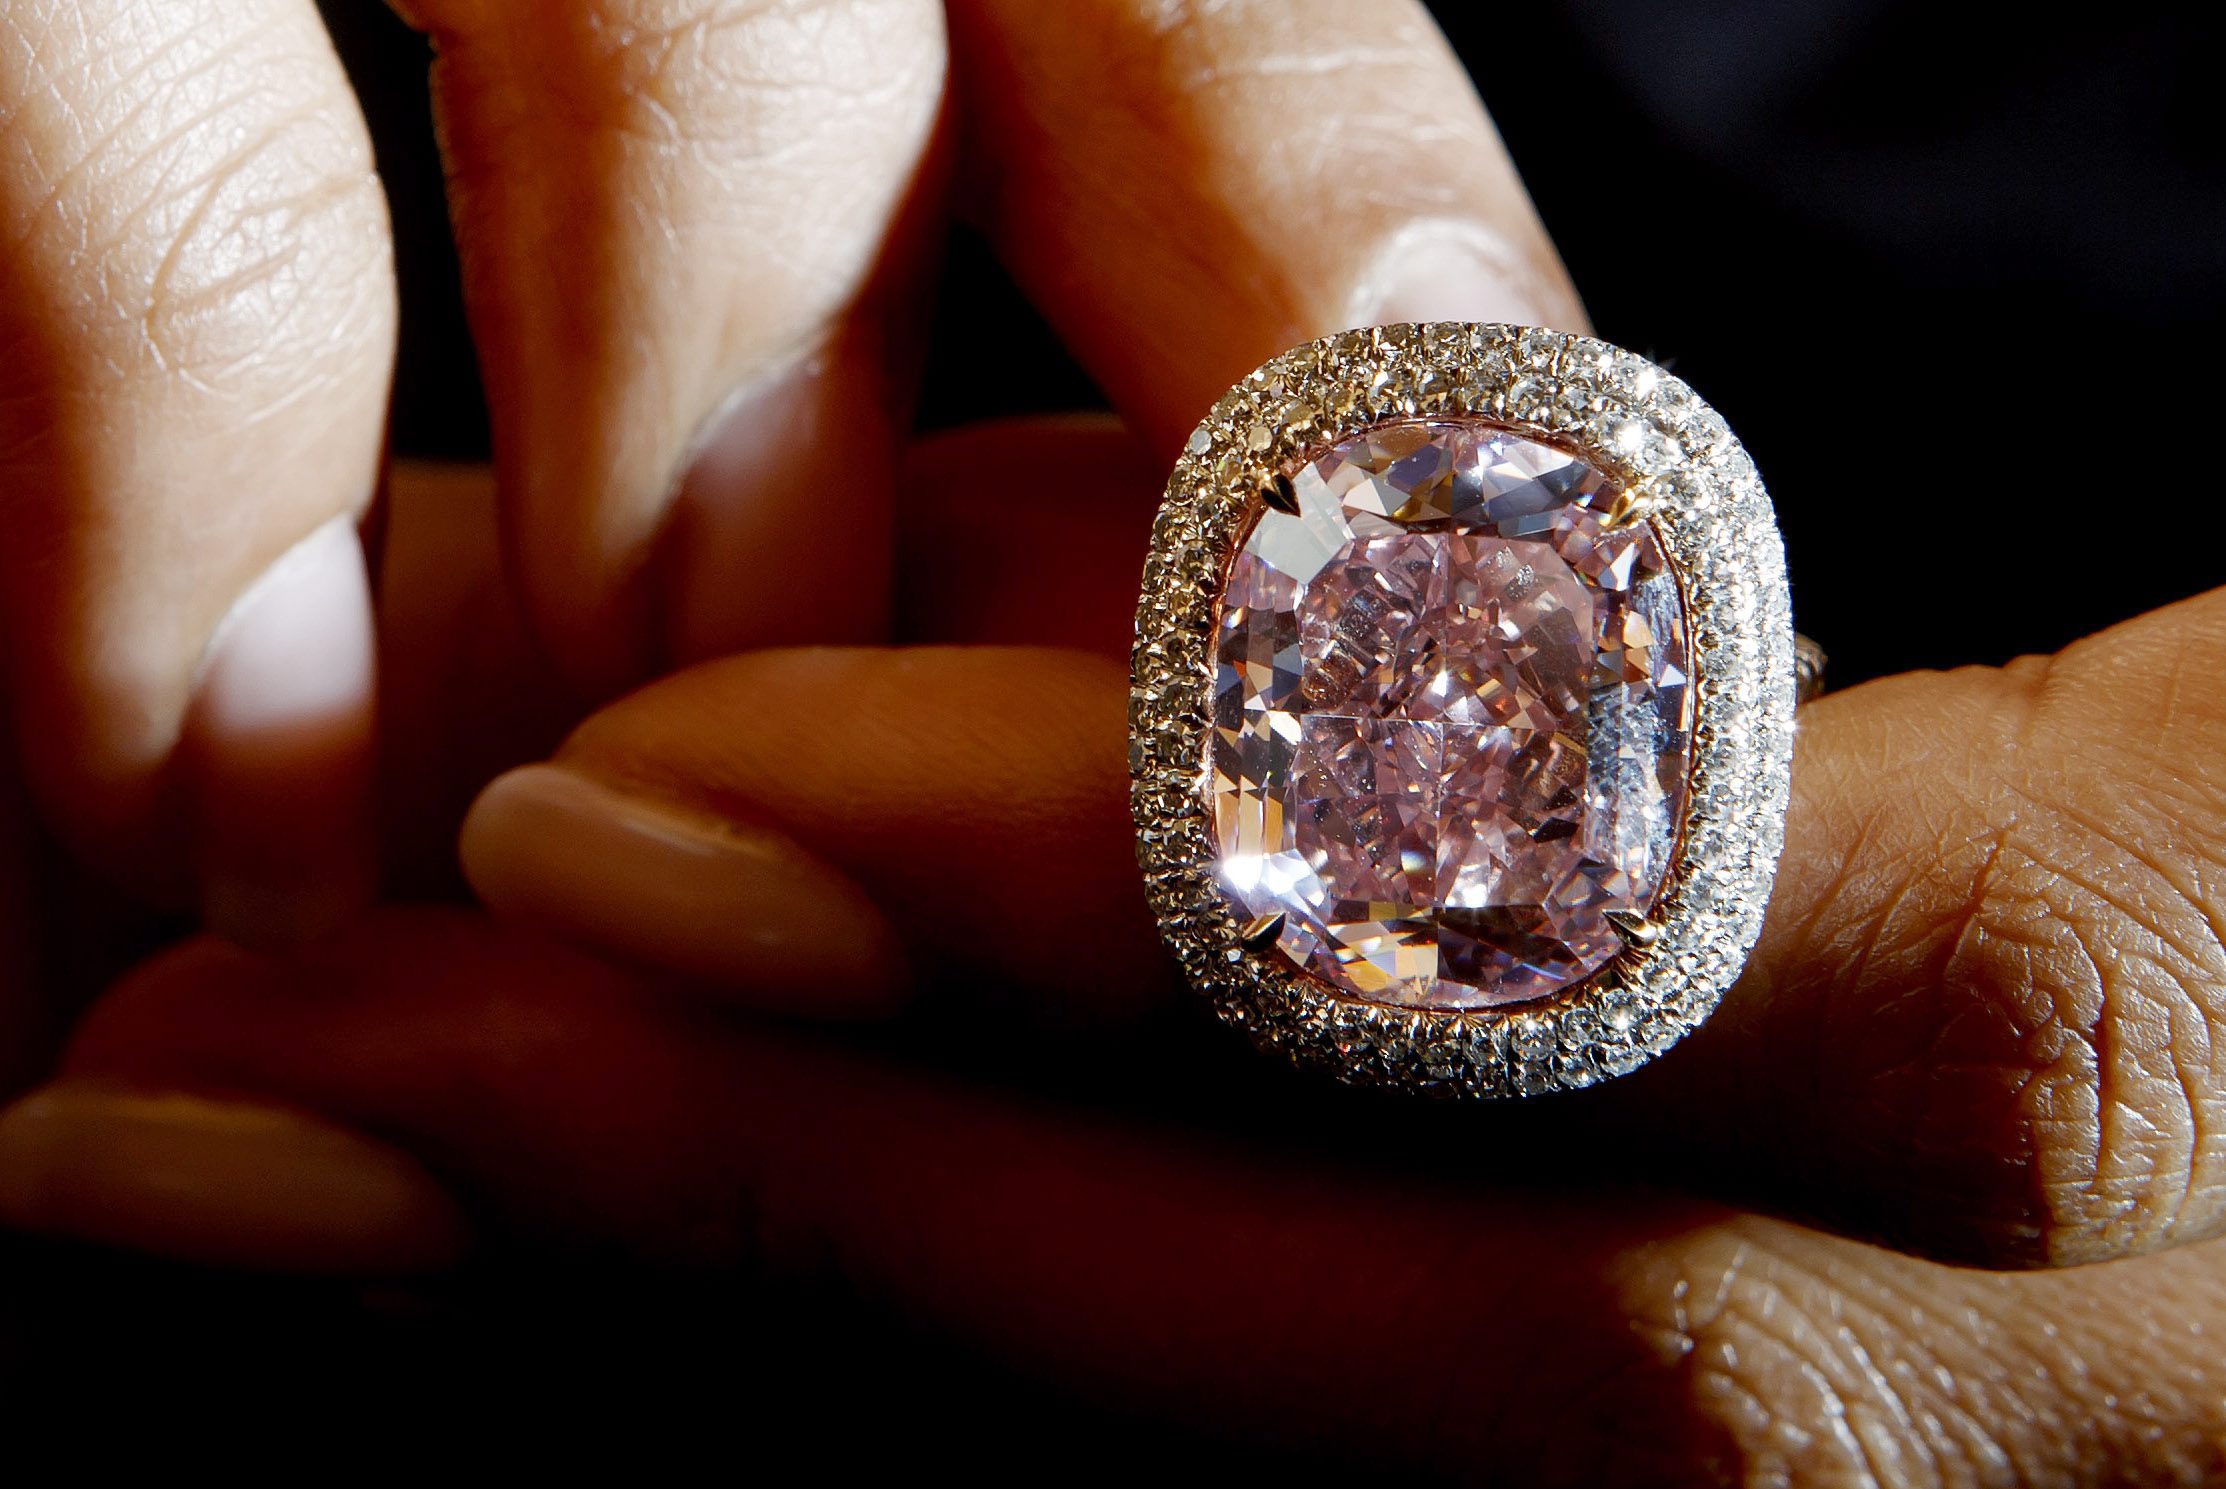 Този наситенорозов диамант е 16.08 карата и е оценен на между 23 и 28 млн. долара